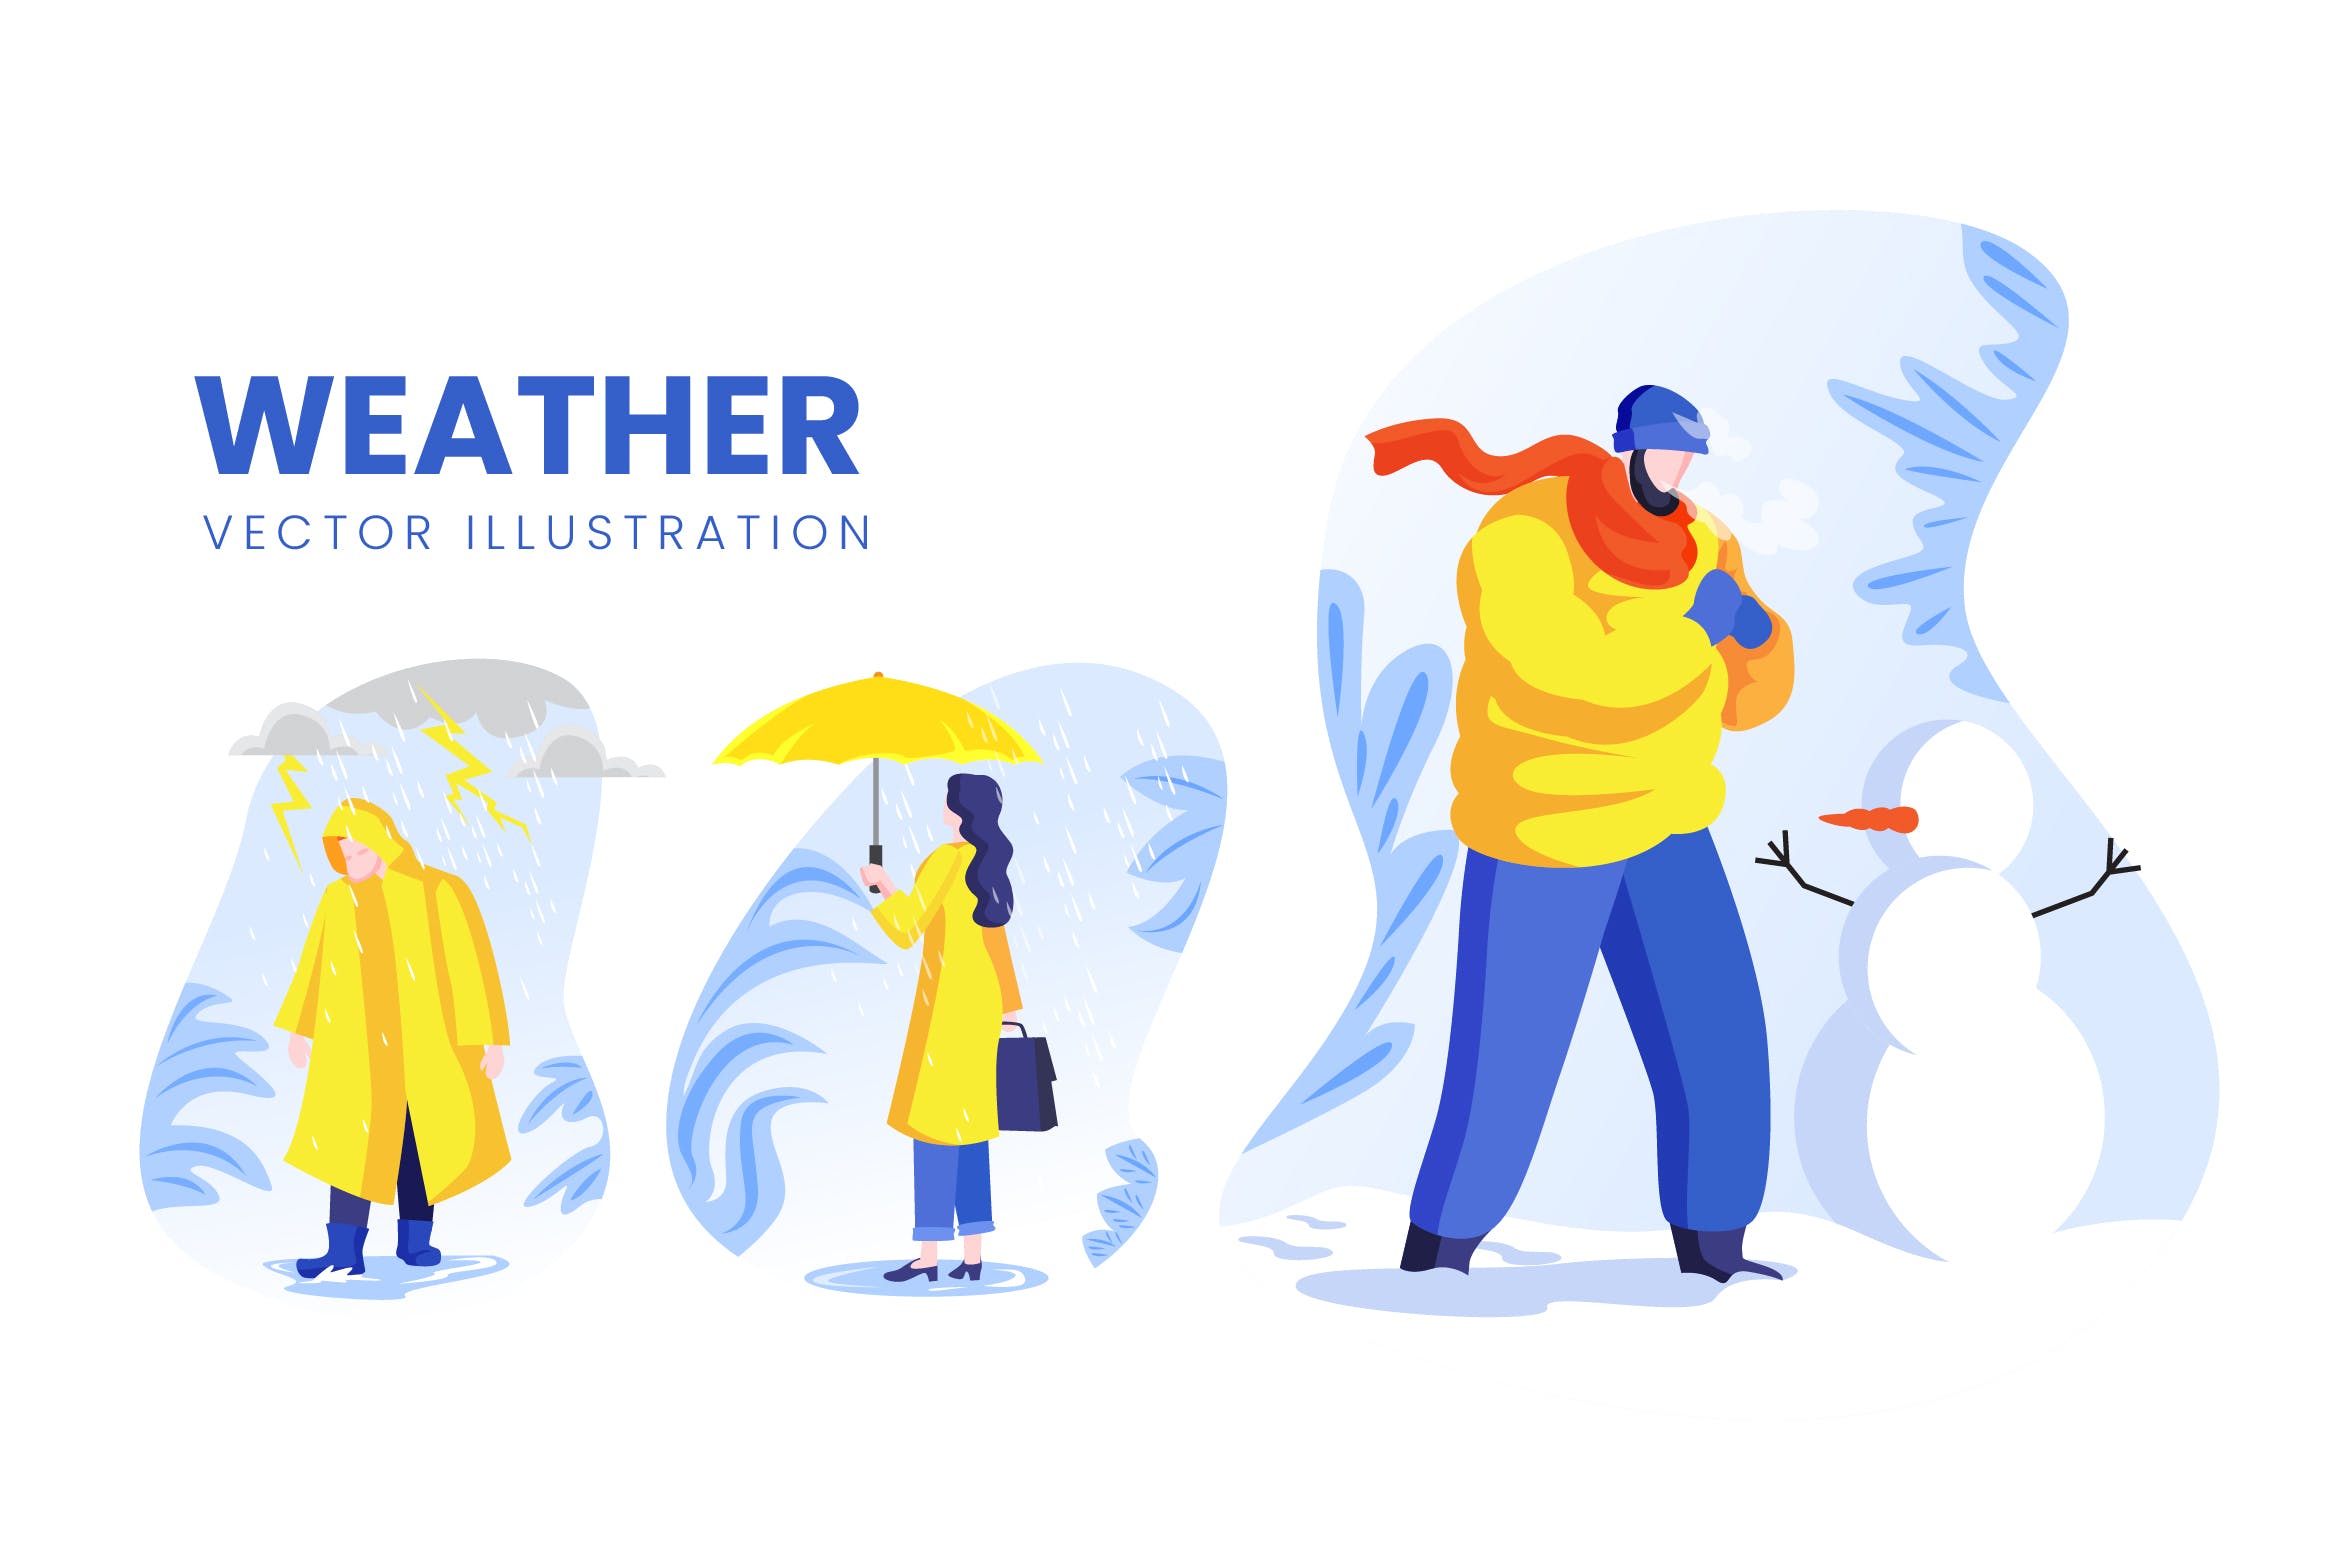 天气预报主题人物形象普贤居精选手绘插画矢量素材 Weather Condition Vector Character Set插图